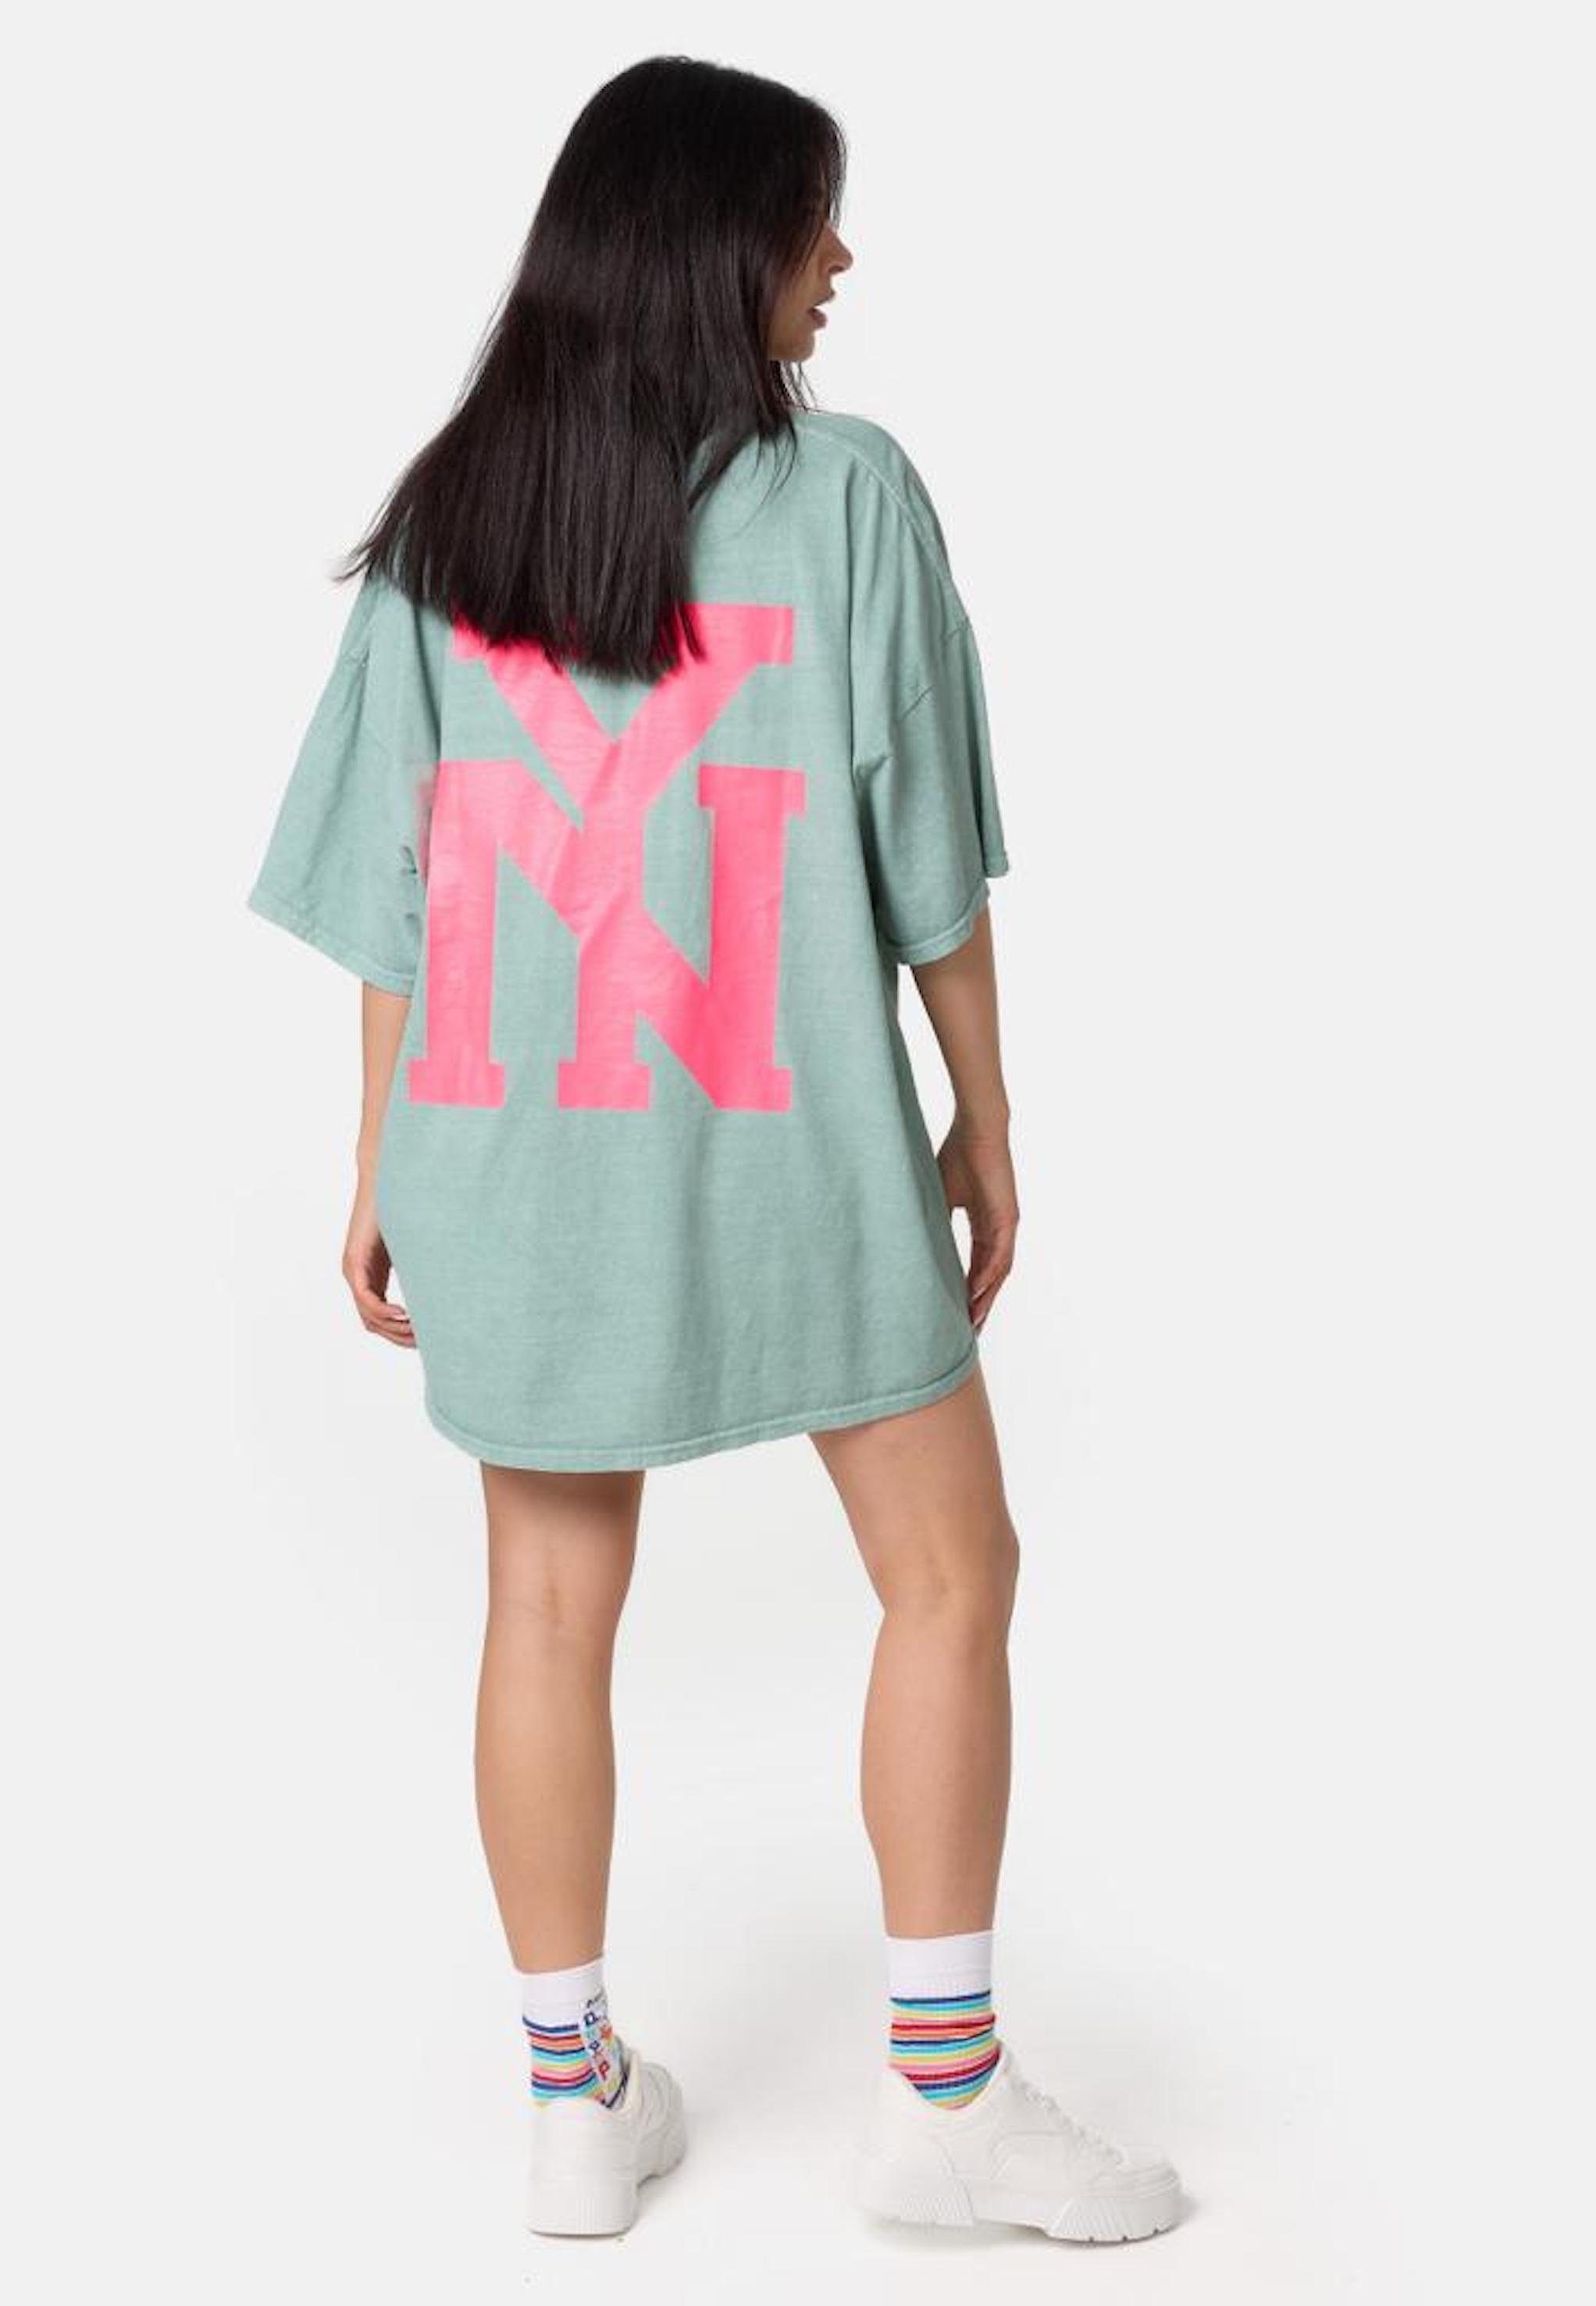 Worldclassca NY Worldclassca Sommer Mint-Pink Oberteil Tee Oversized Print NEW Print-Shirt T-Shirt YORK